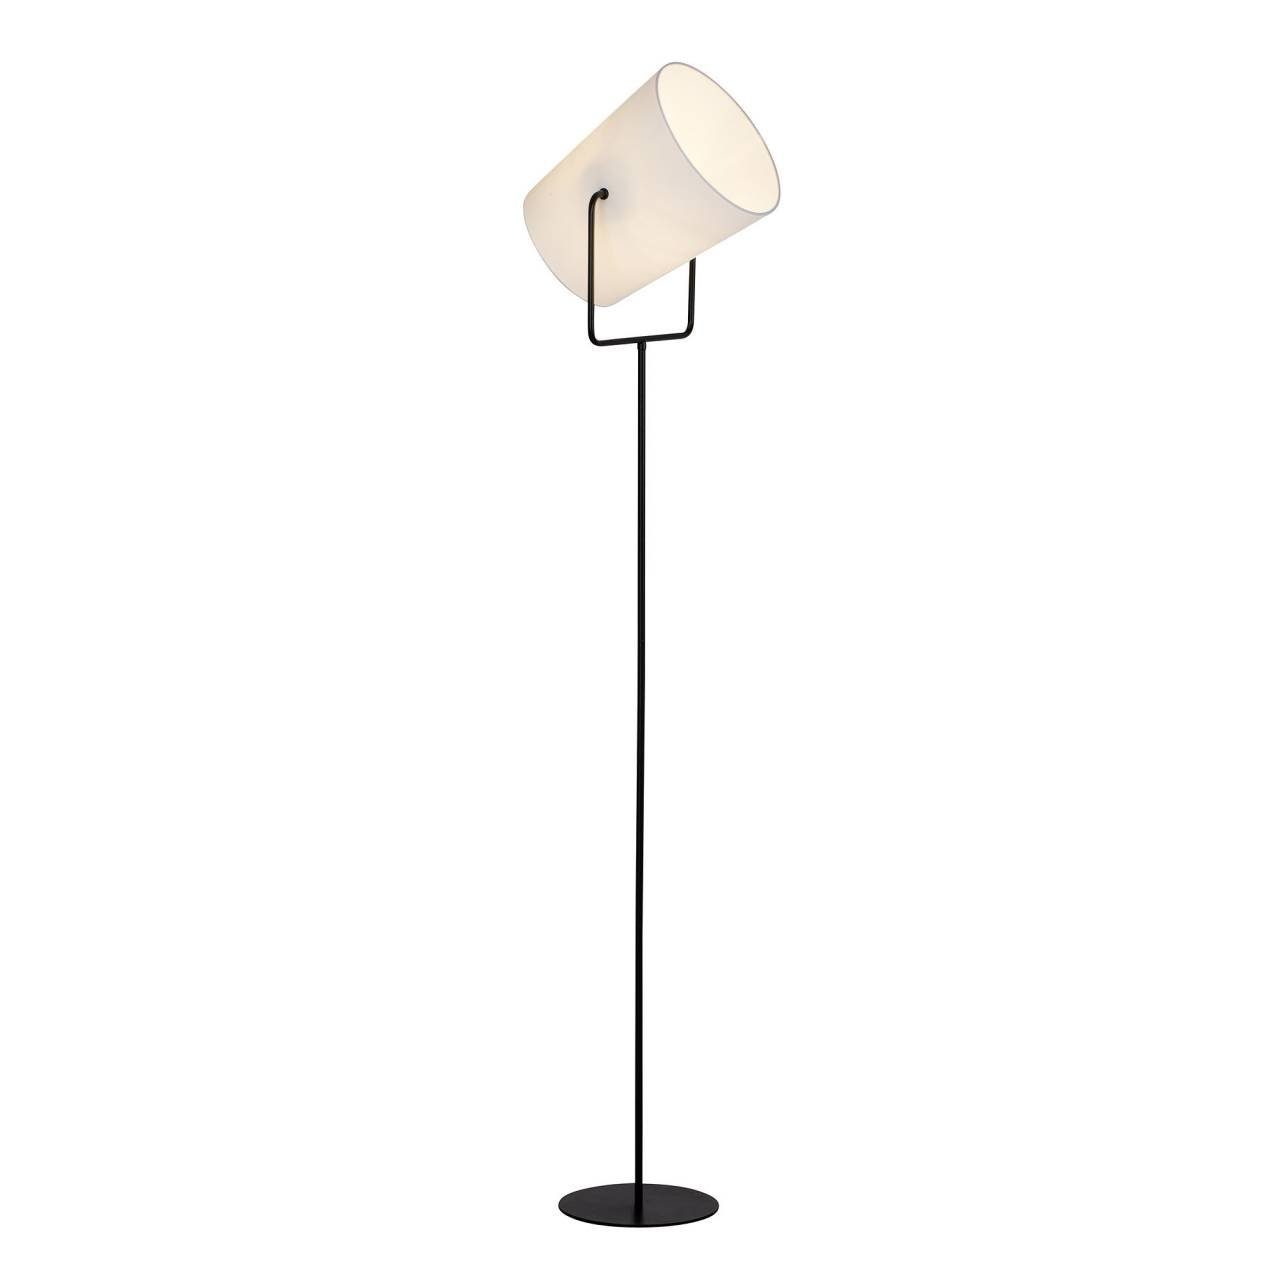 Brilliant Stehlampe Bucket, 1x Standleuchte schwarz/weiß E27, Bucket 1flg geeign Lampe A60, 60W